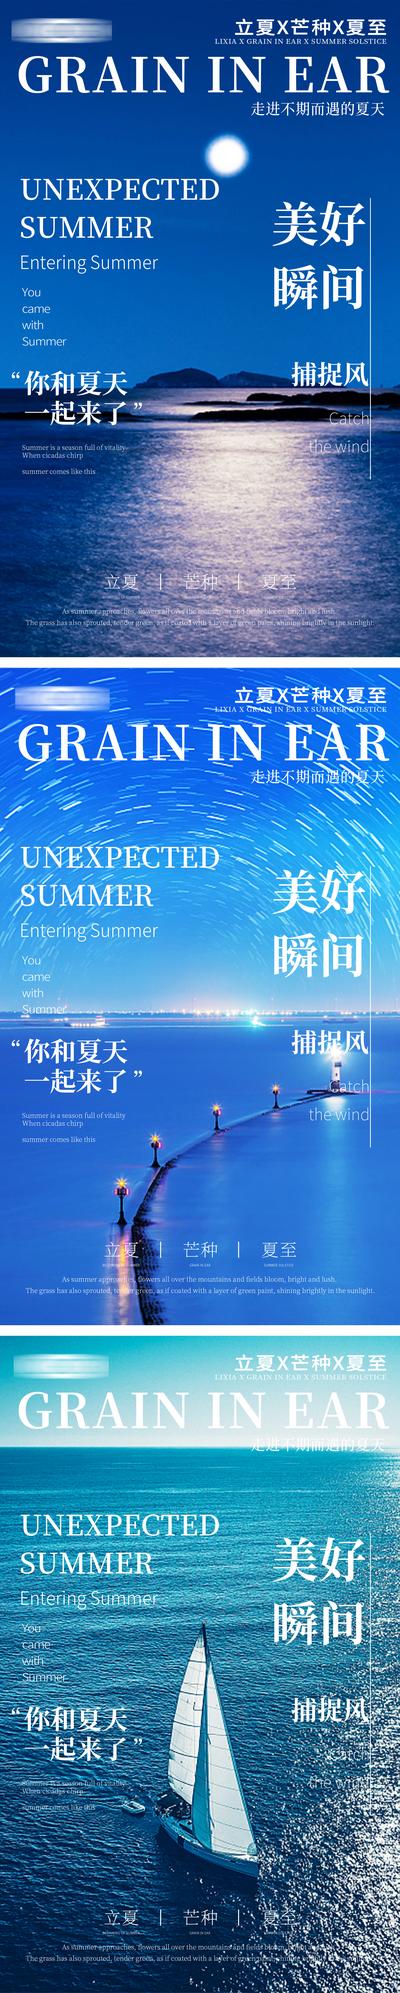 南门网 广告 广告 节气 立夏 风景 系列